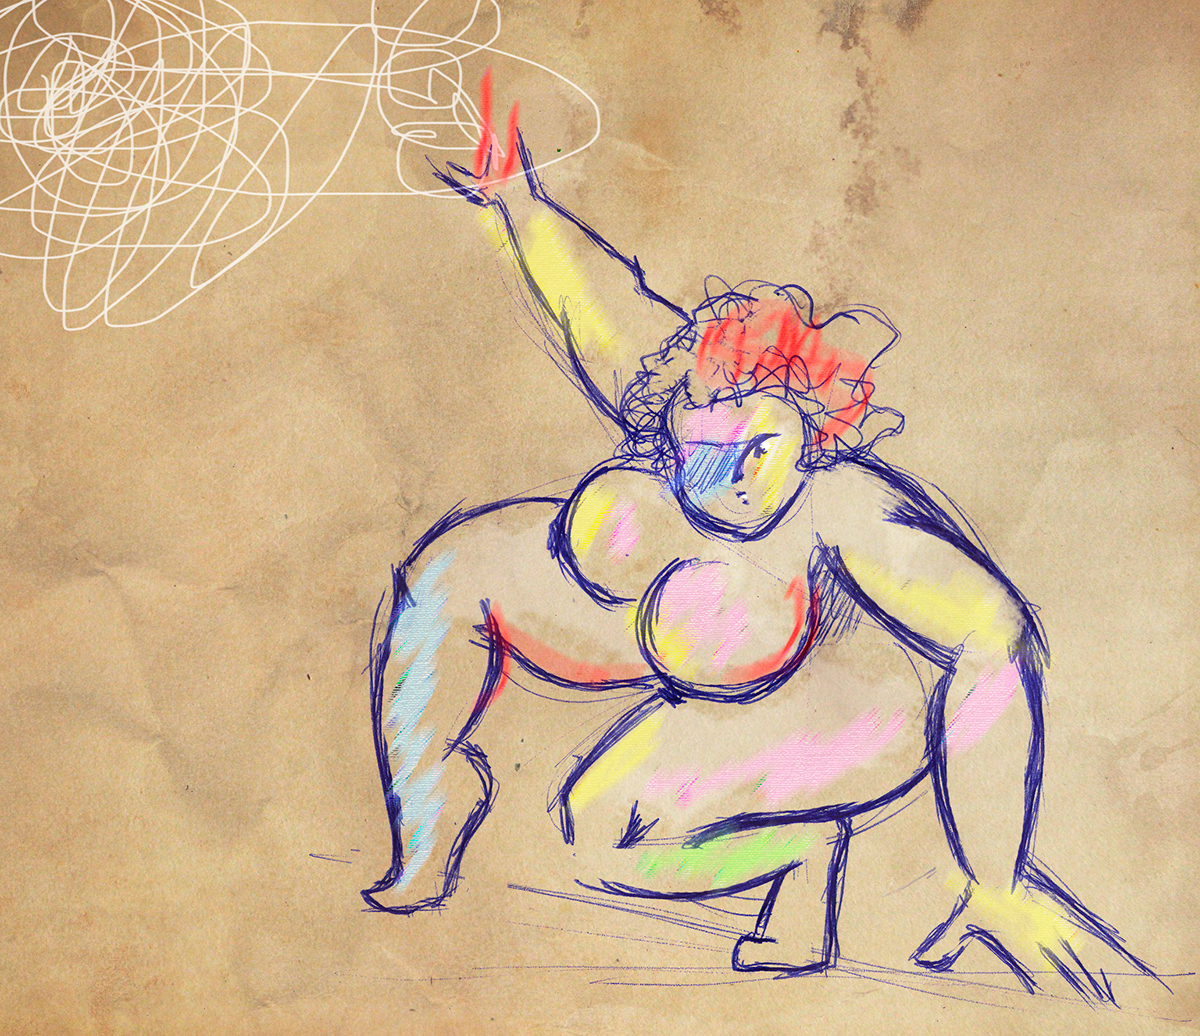 dibujo ilustracion desnudo Gordas sensual erotico mujer cuerpo humano diseño gráfico bocetos